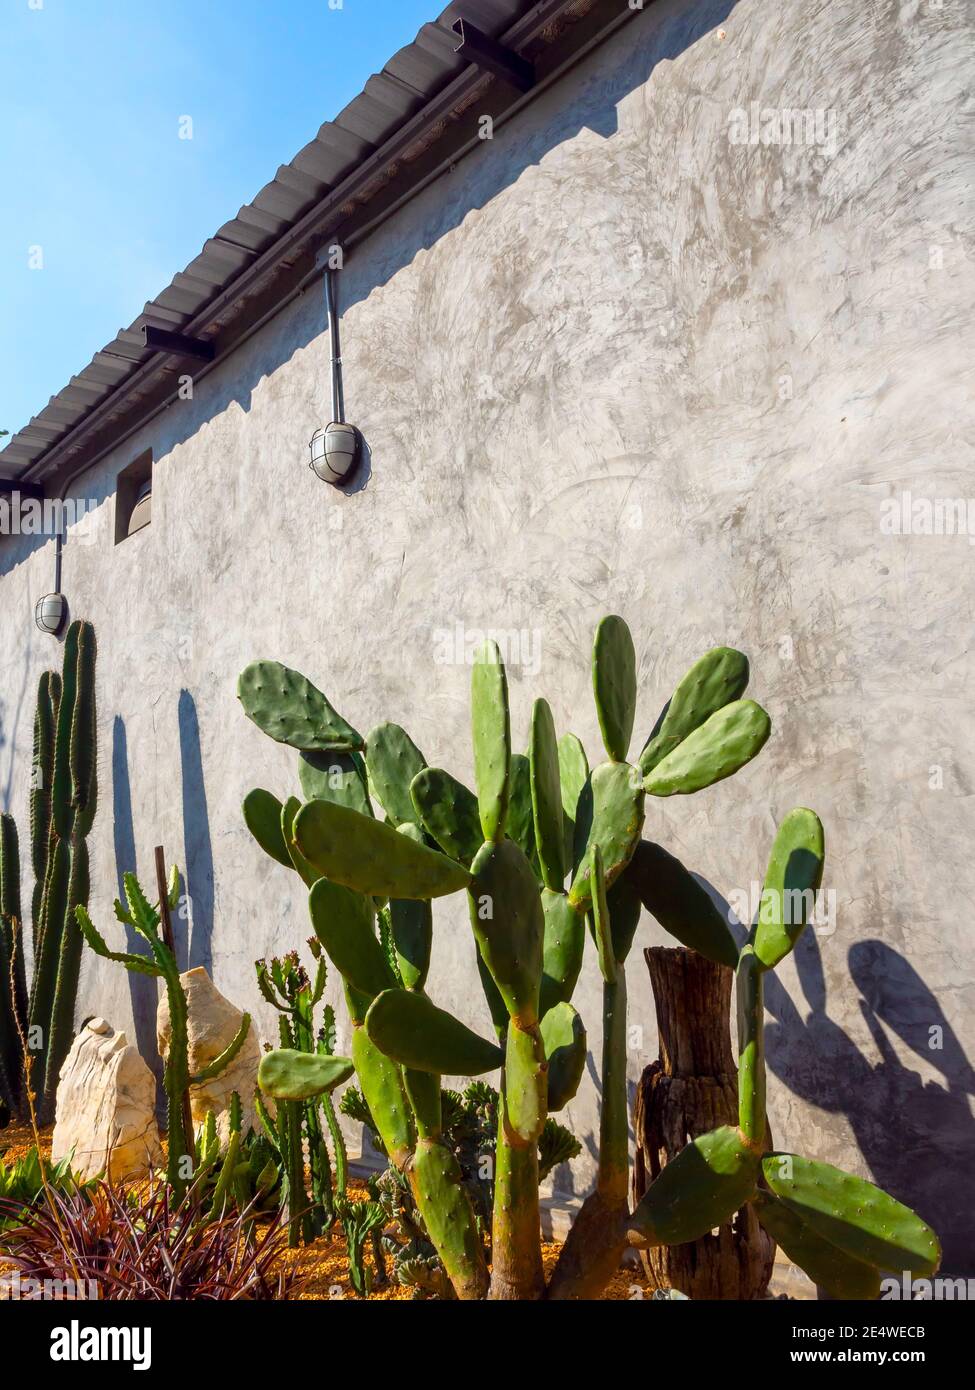 Décoration de jardin de Cactus extérieure, style vertical. Cactus verts près d'un bâtiment en béton par beau temps. L'usine de Cactus pousse à l'extérieur. Banque D'Images